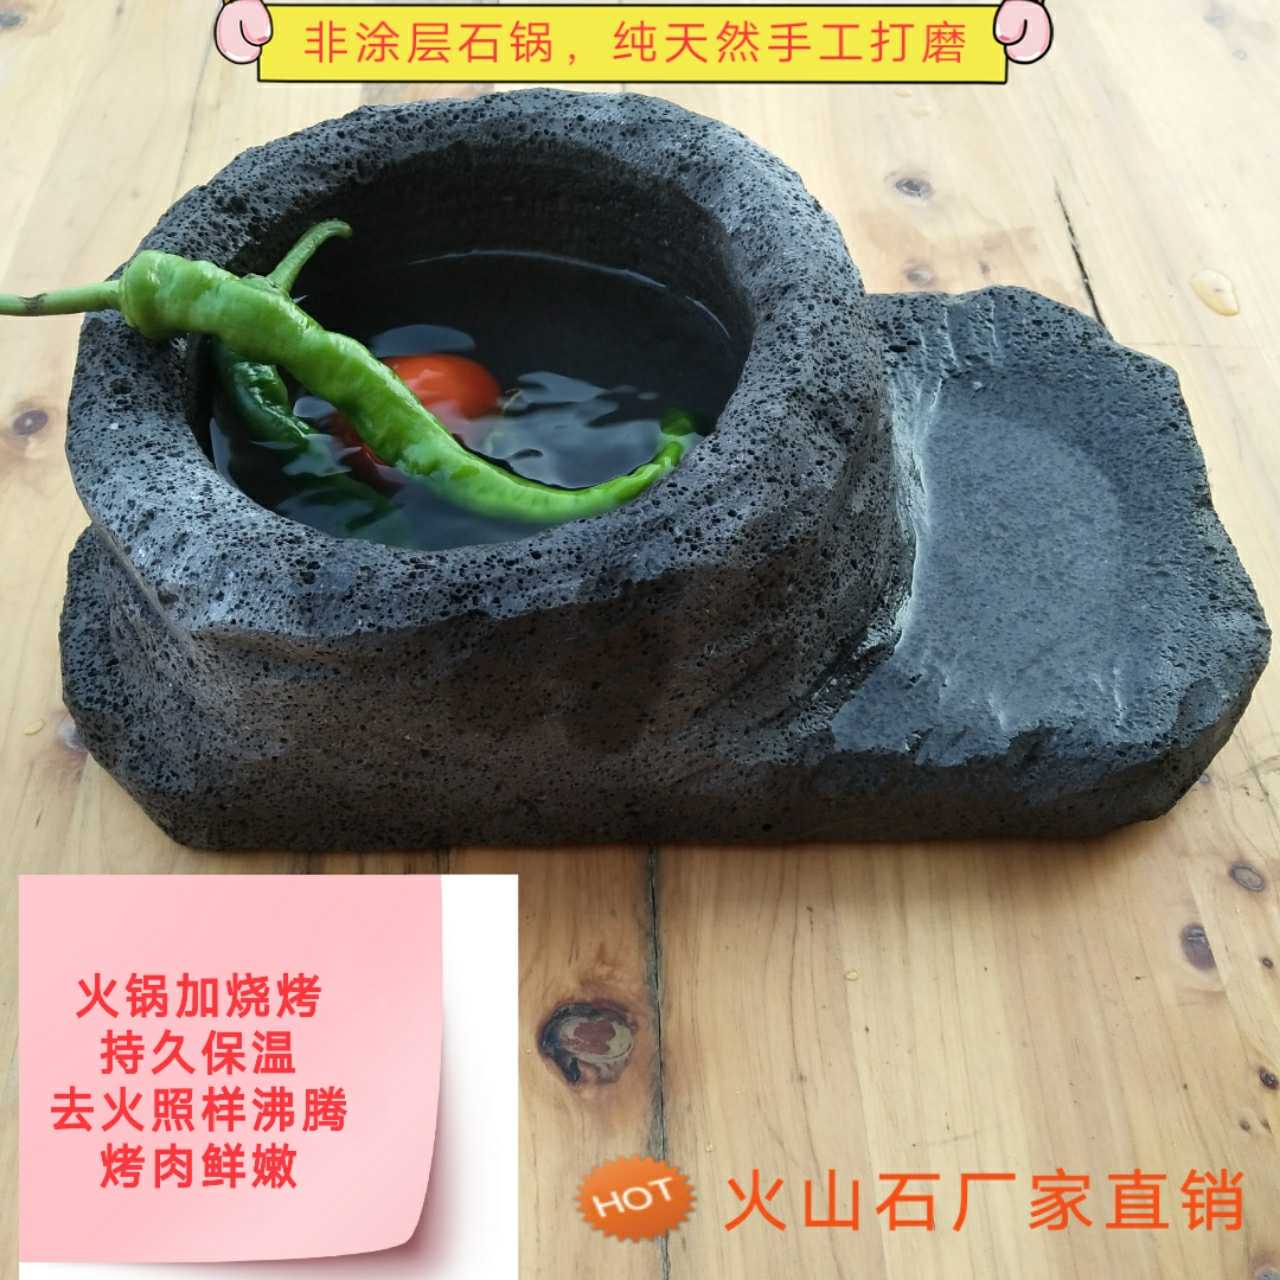 火山石石锅煮火锅纯天然款烤涮一体锅抖音视频拍摄用锅石锅鱼烤肉